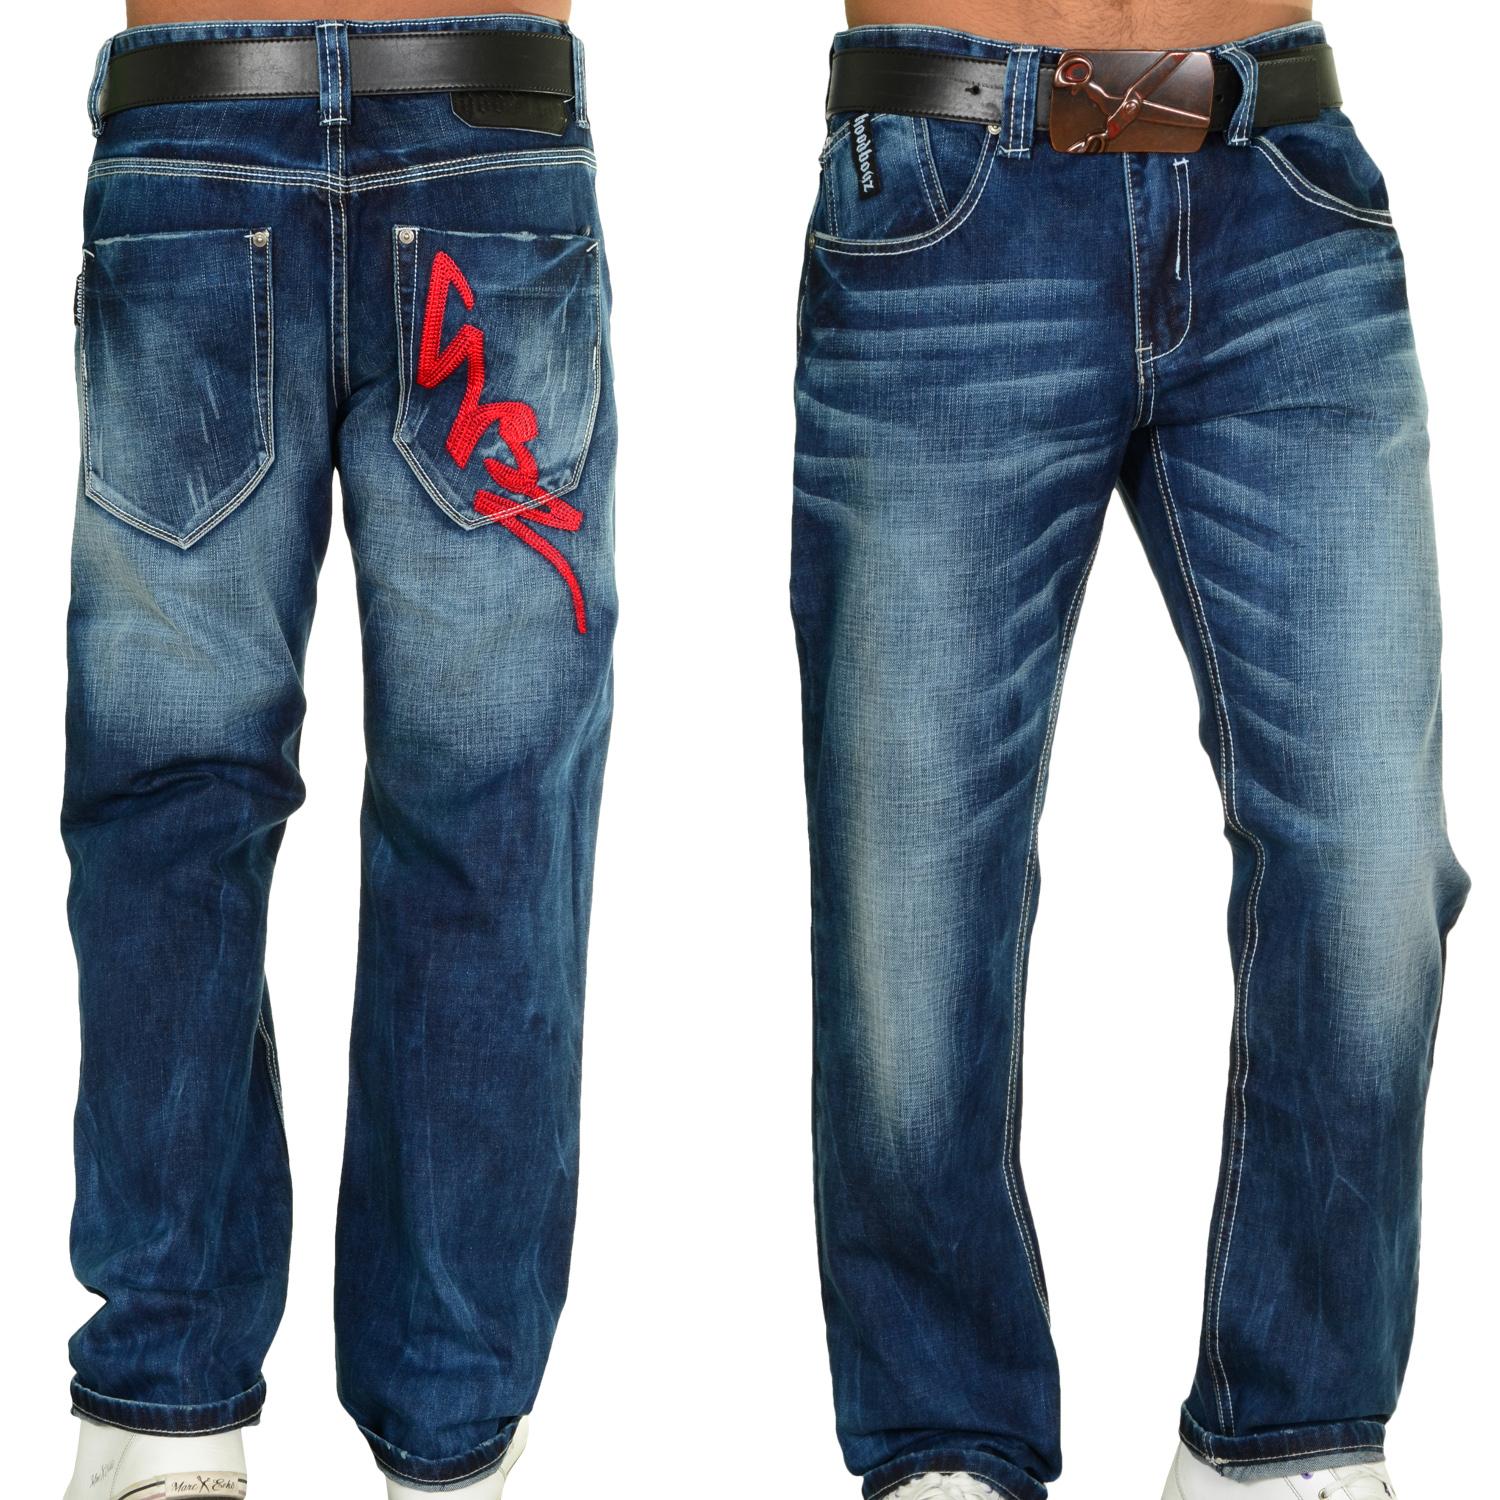 Foto Hoodboyz Dusty Indigo Wash Hombres Loose Fit Jeans De Color Azul Os...